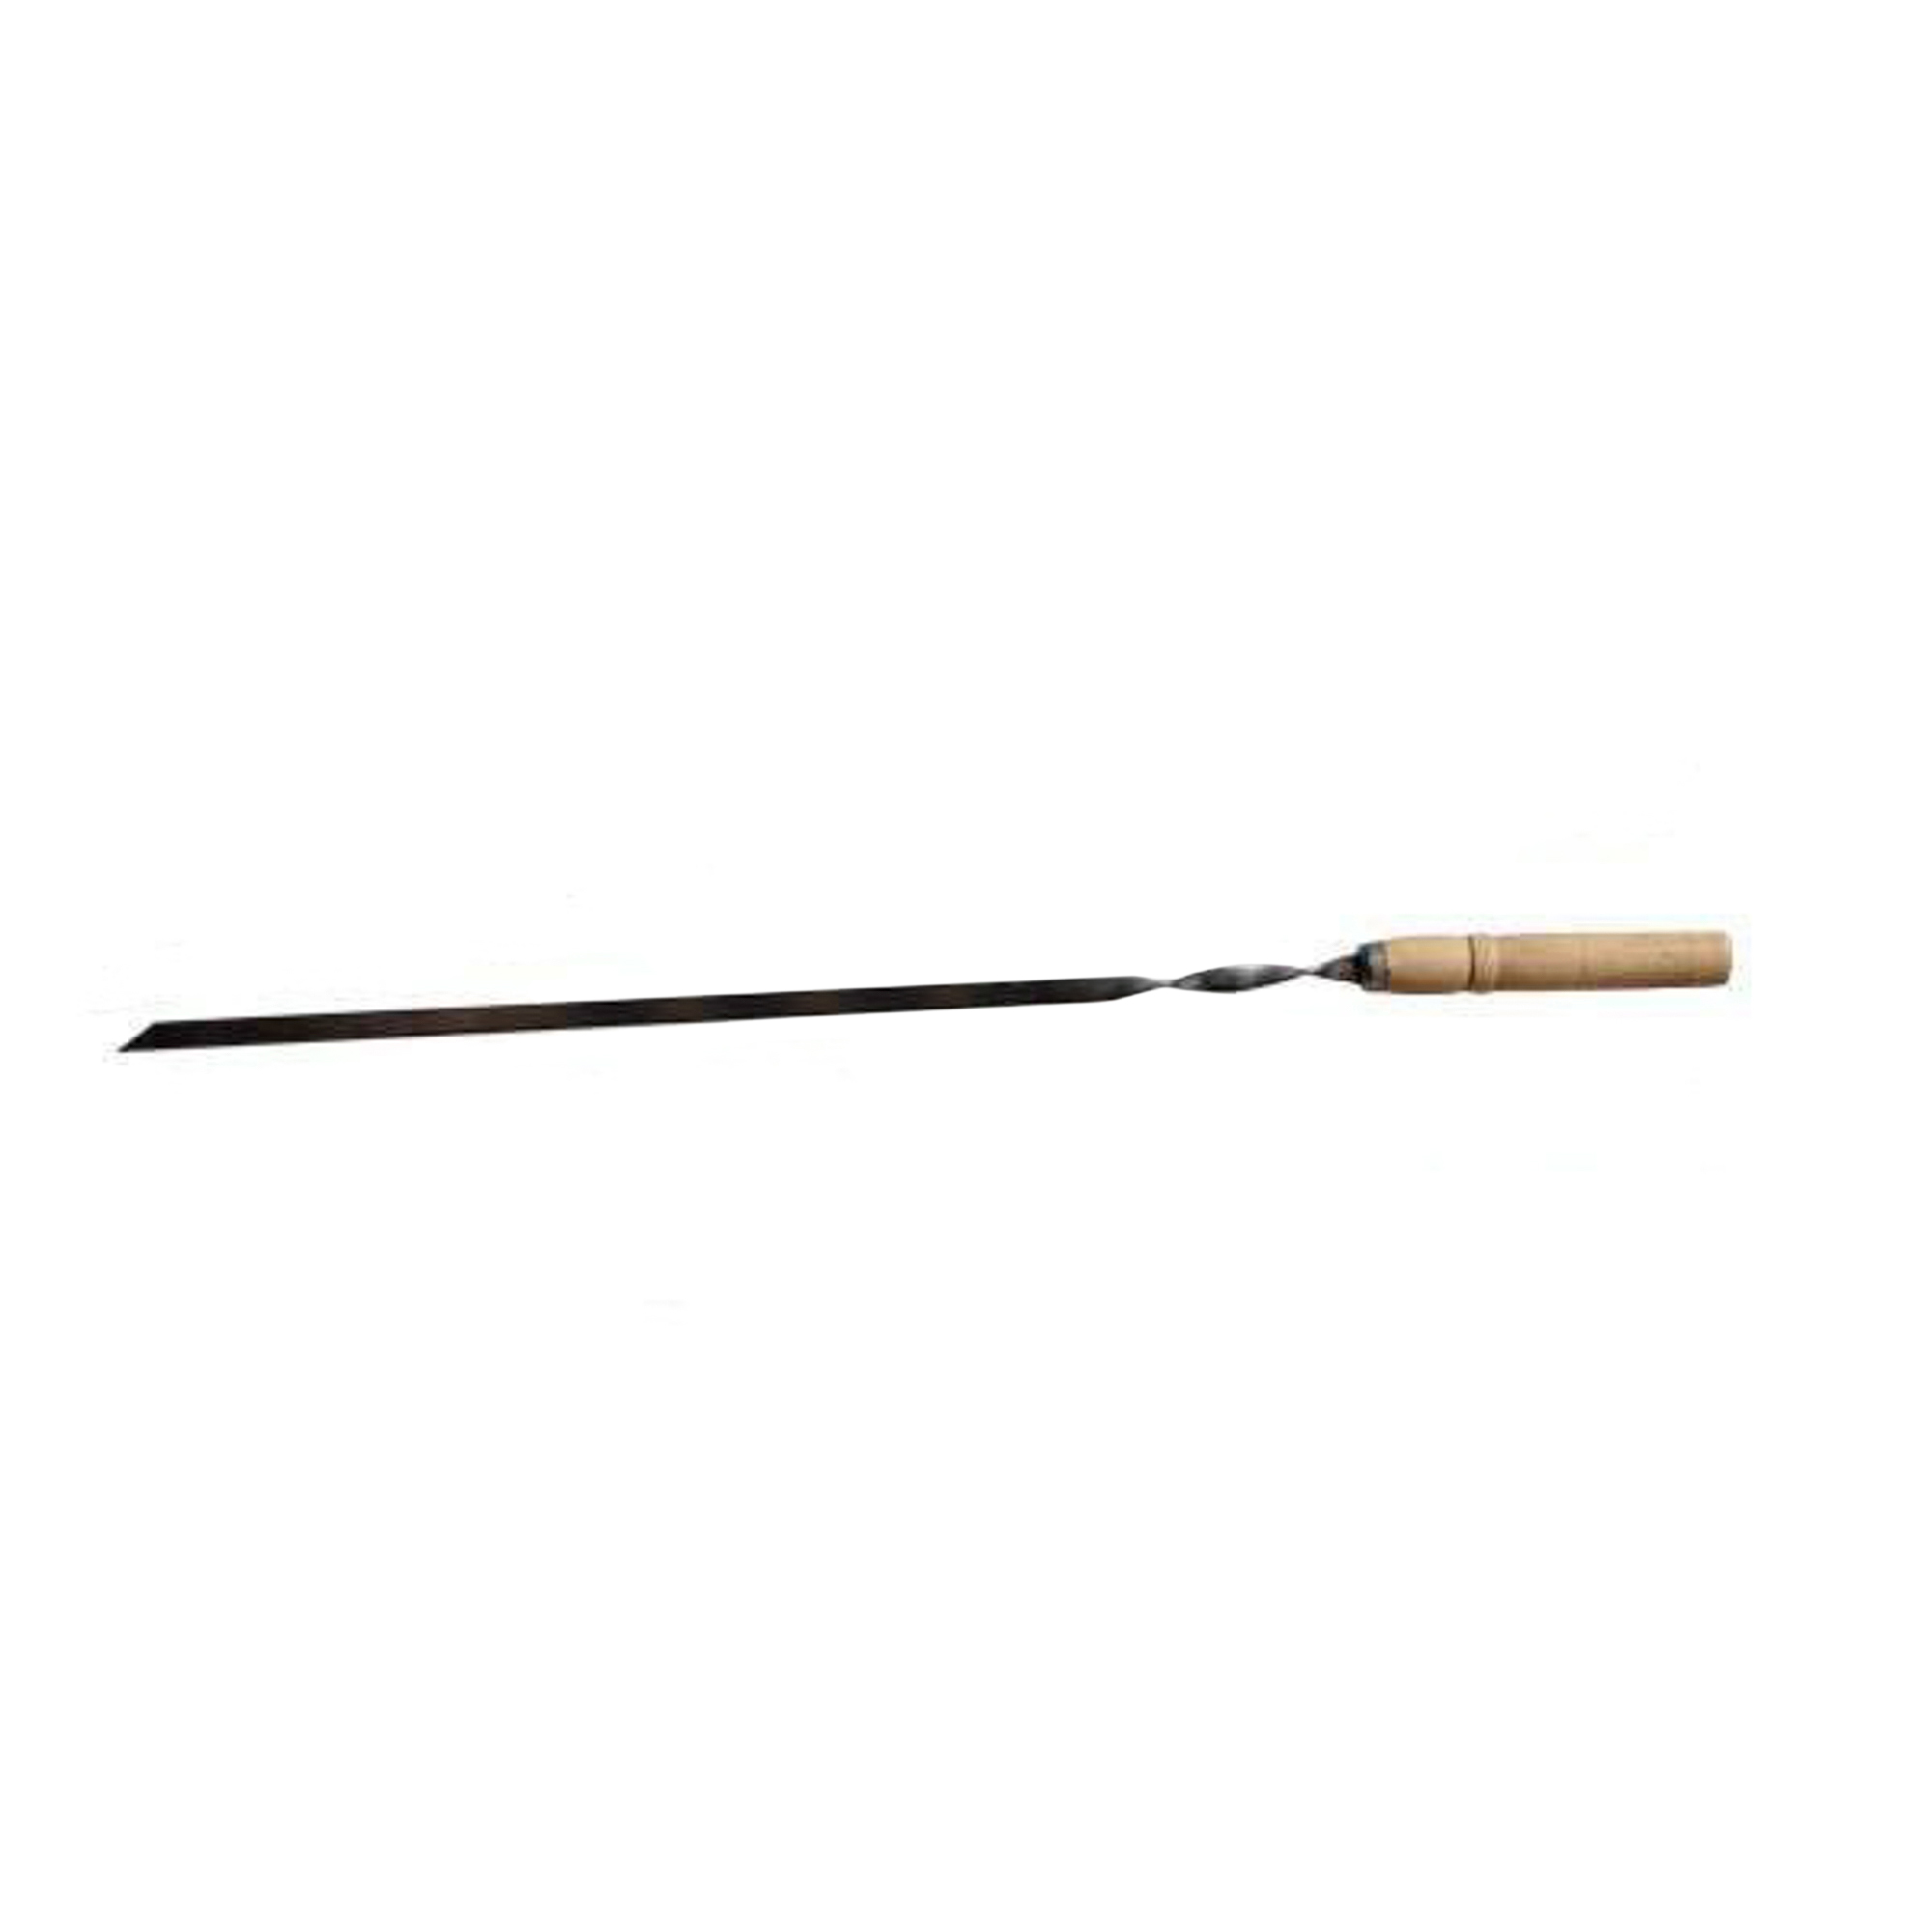 Шампур металлический Аск-38 с деревянной ручкой 55 см (14064) шампур деревянный 40 х 0 6 см 12 шт